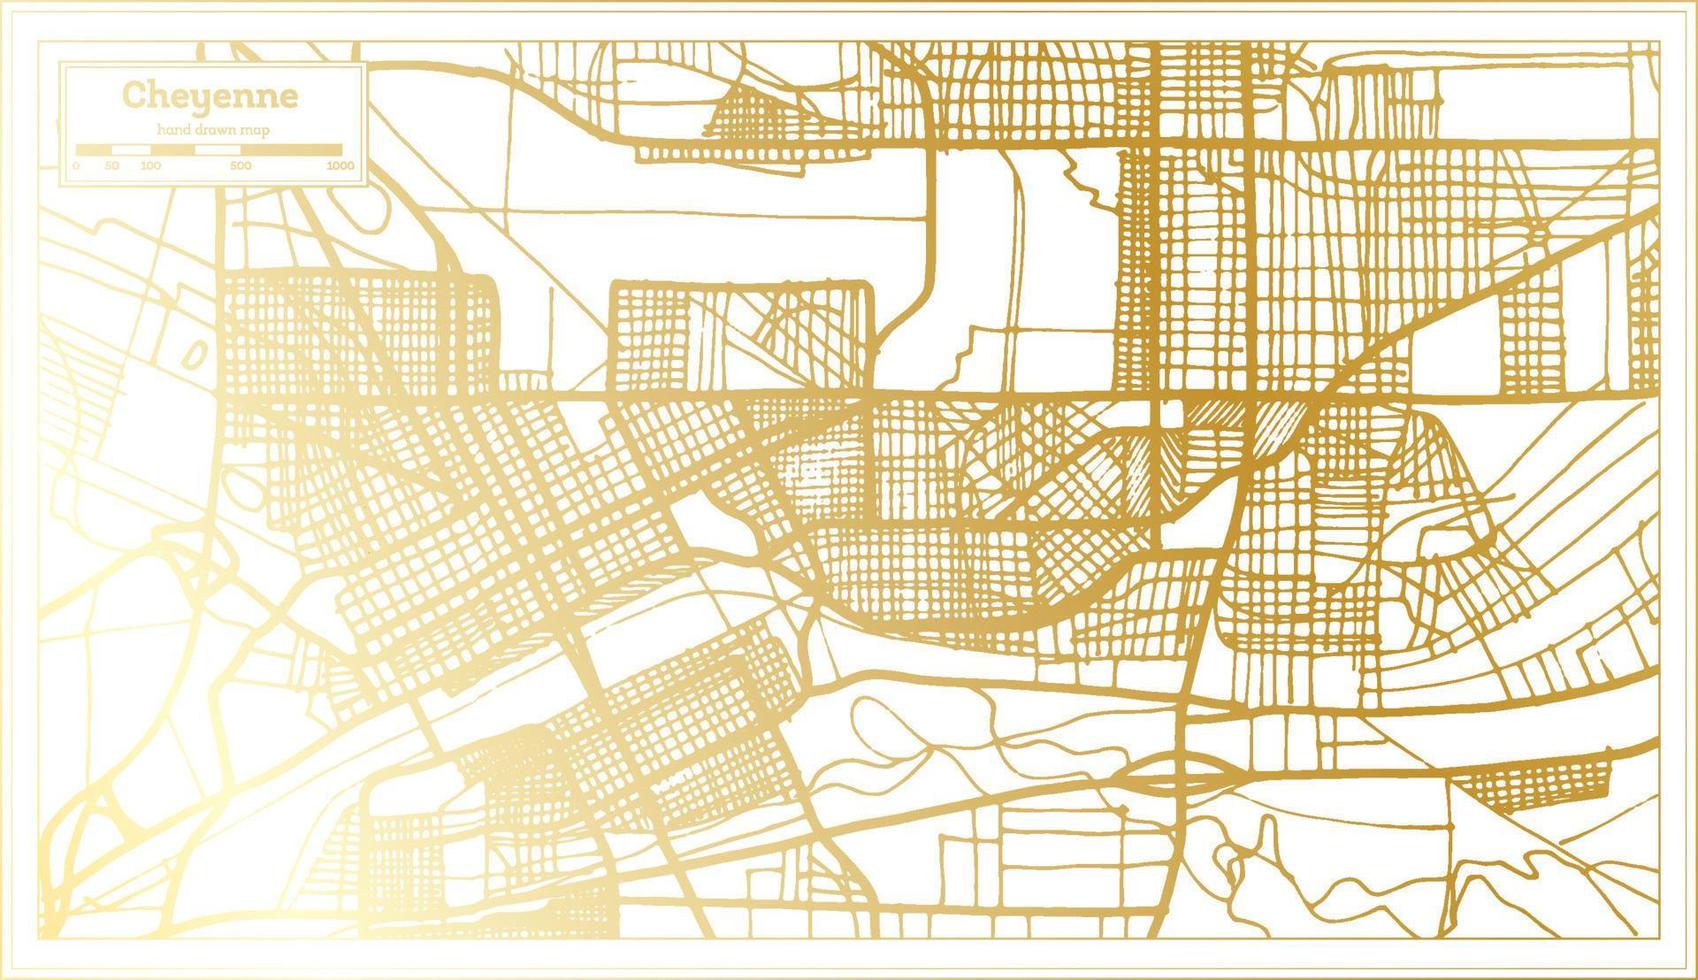 cheyenne Verenigde Staten van Amerika stad kaart in retro stijl in gouden kleur. schets kaart. vector